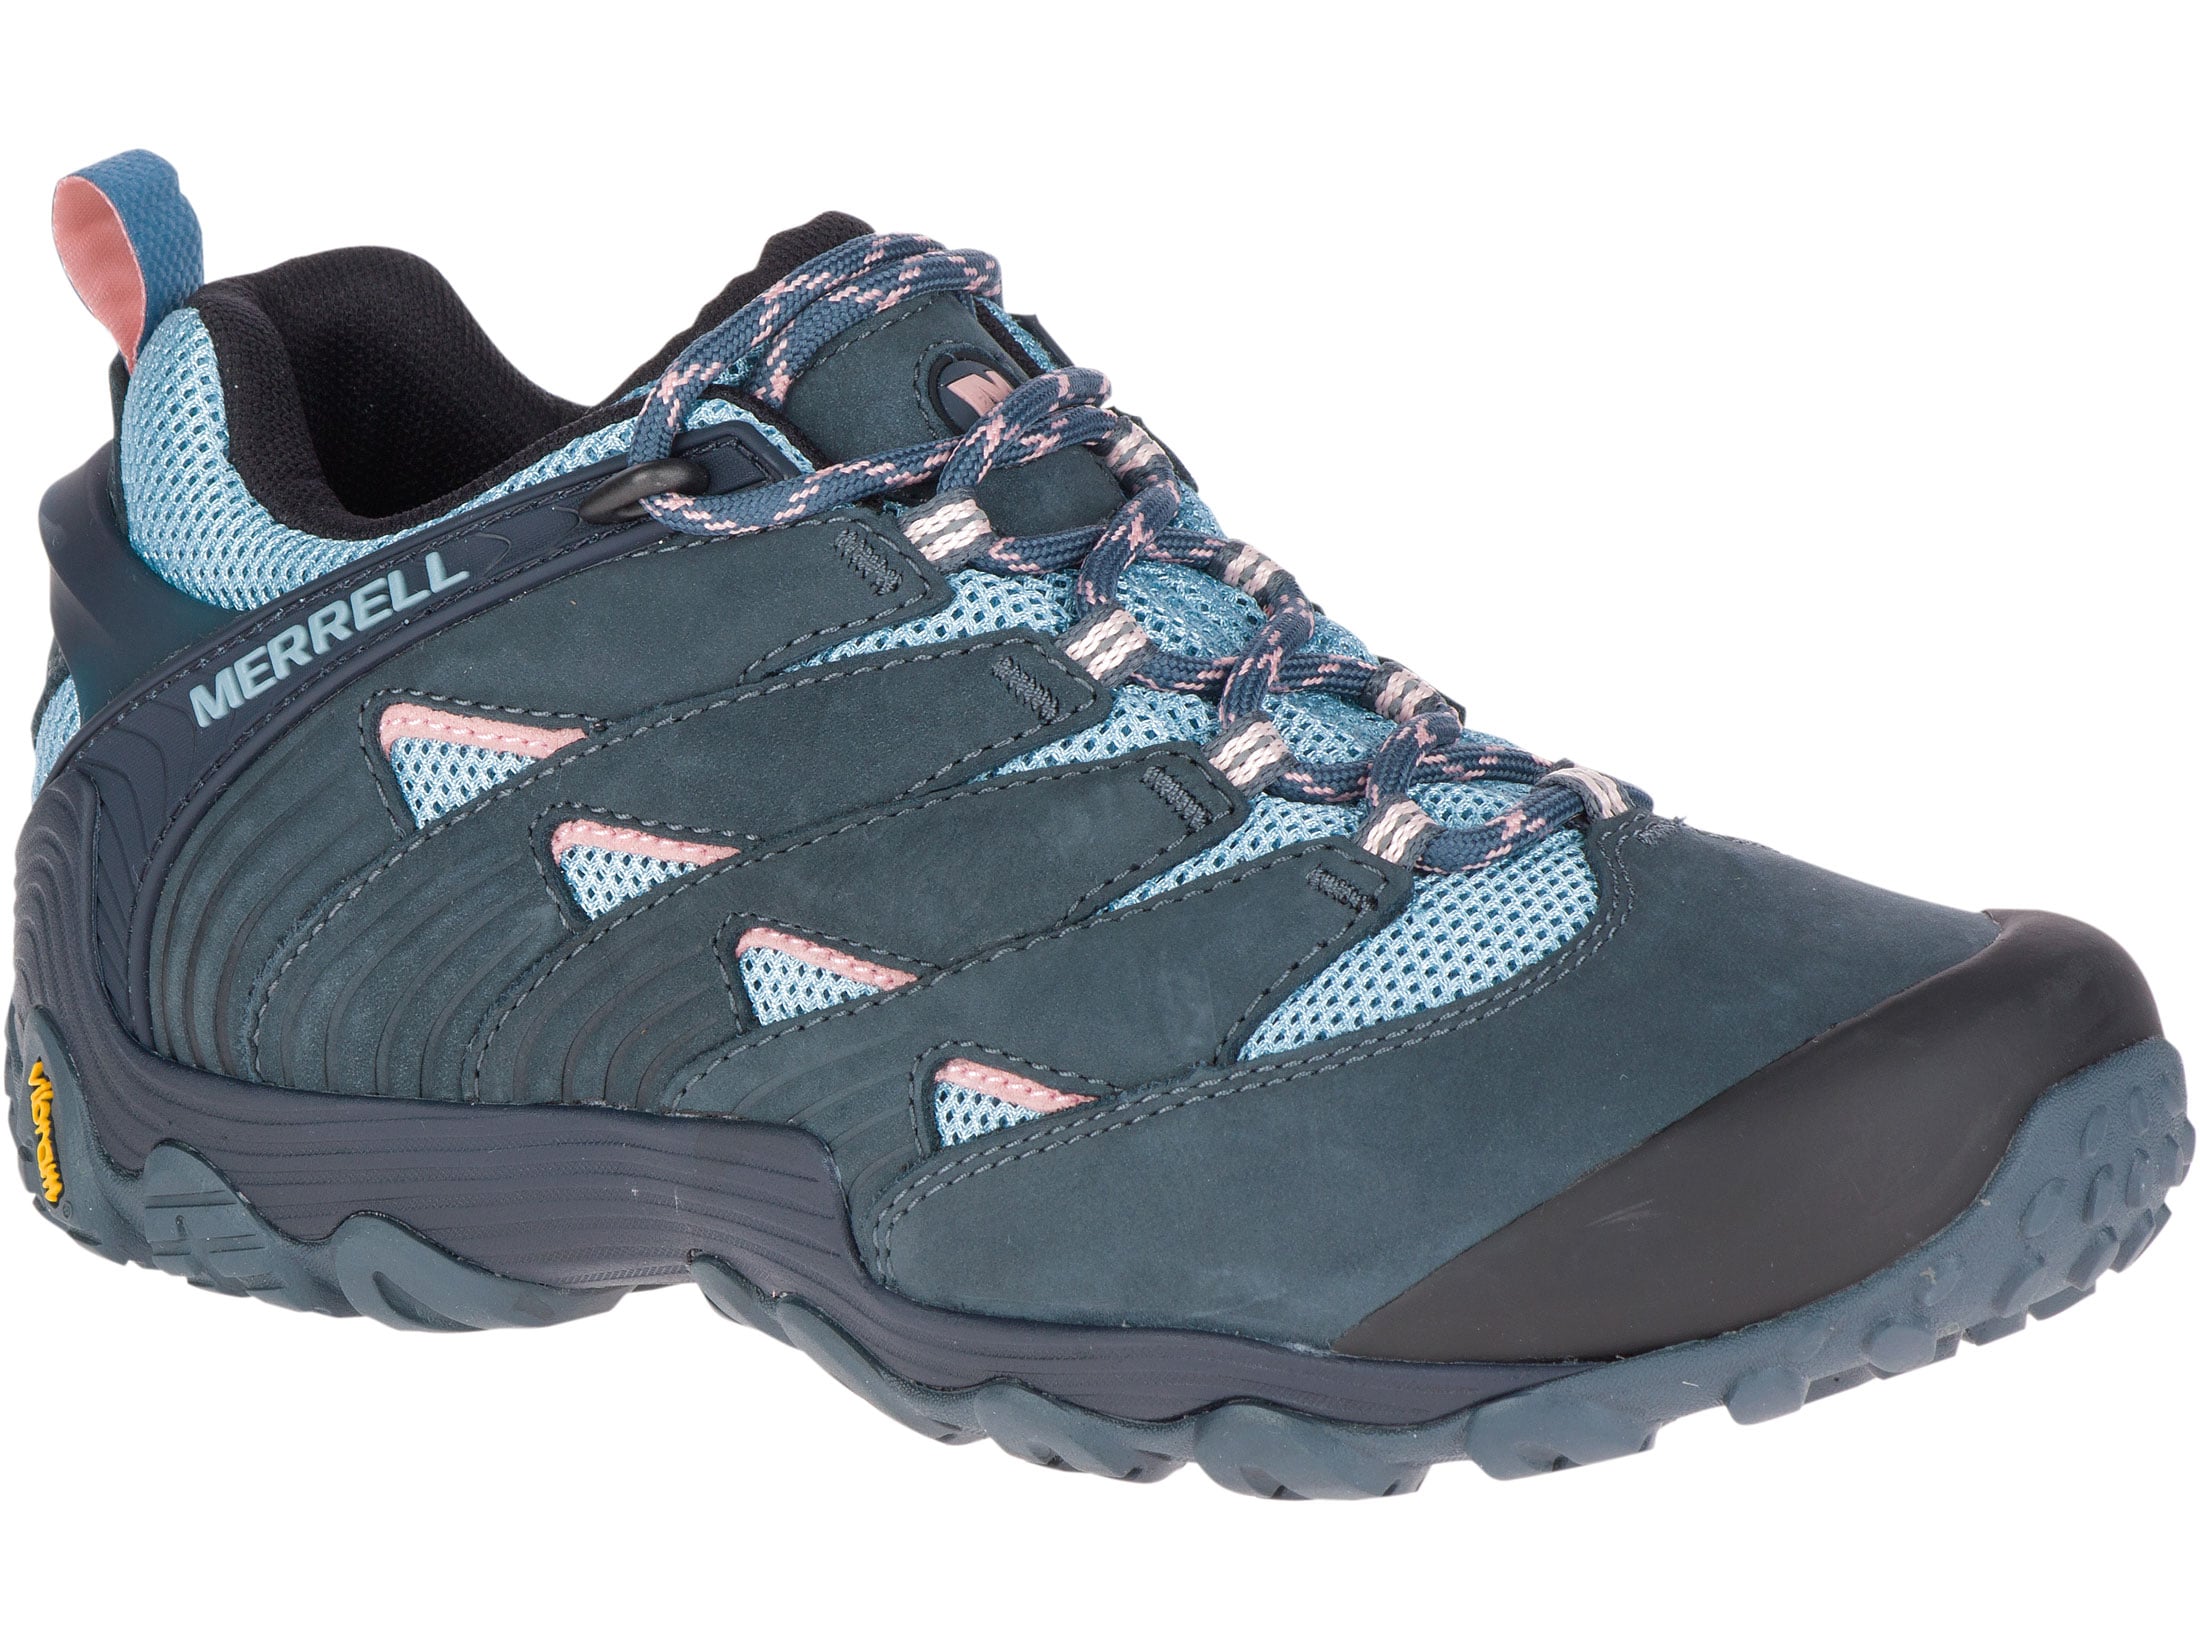 Merrell Chameleon 7 4 Hiking Shoes Leather/Nylon Slate Women's 8.5 D